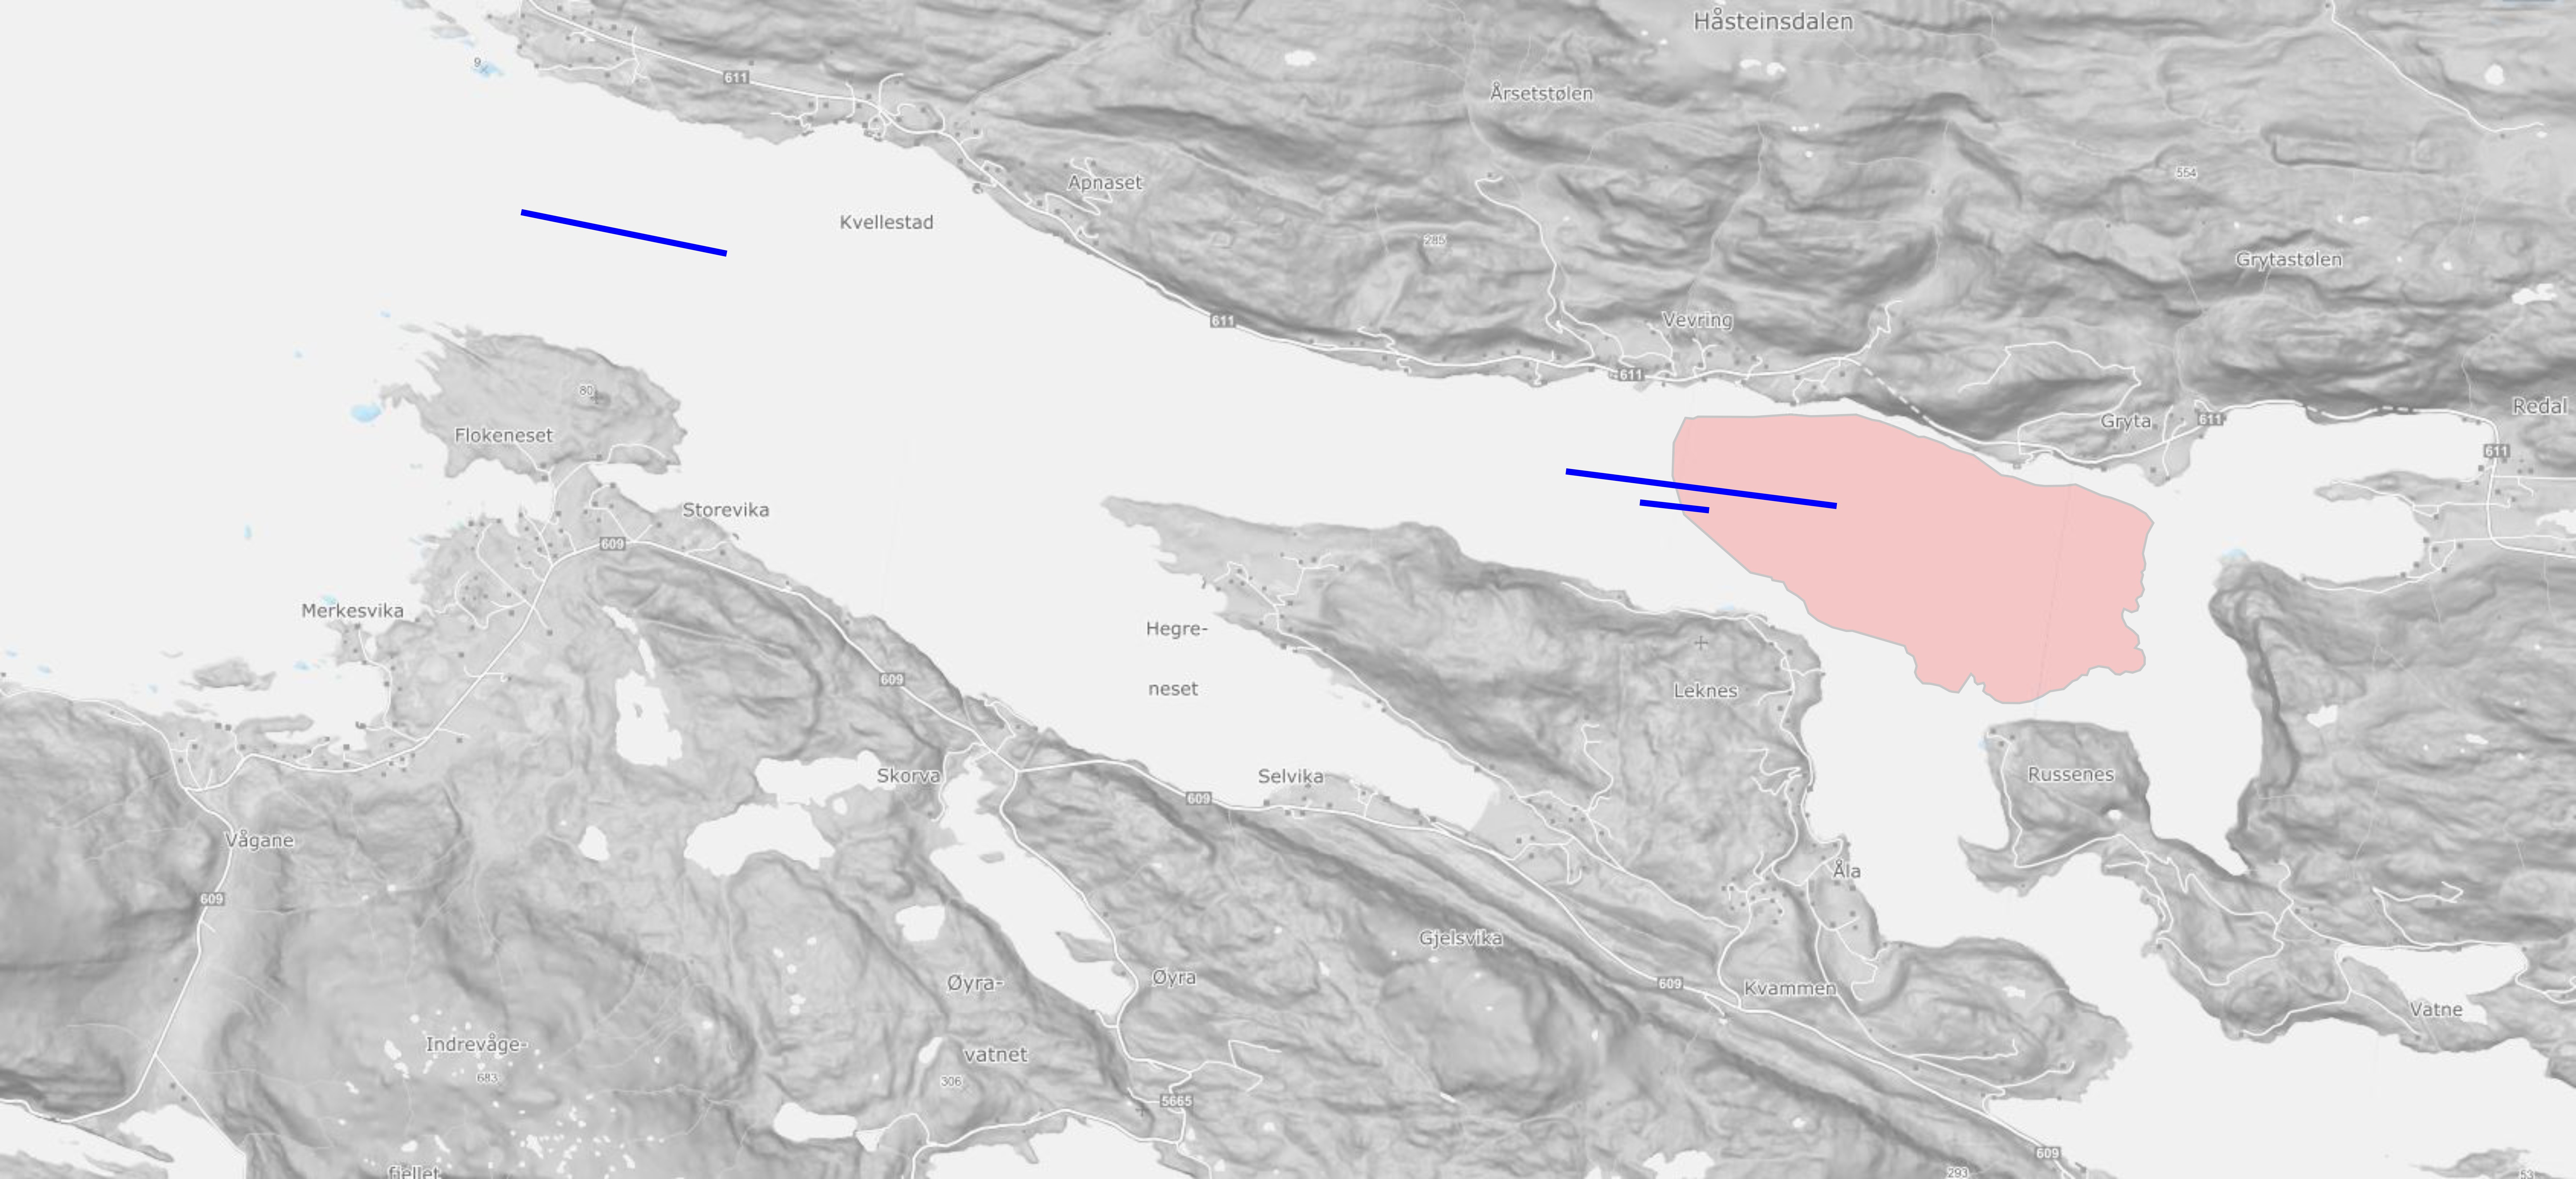 Kartet viser passeringen av de tre bunntrålstasjonene i Førdefjorden på toktene i 2021 og 2022., som trålstreker, fra start- til stopposisjon. De to trålstasjonene i deponiområdet startet begge utenfor det planlagte området og ble avsluttet inne i deponiområdet